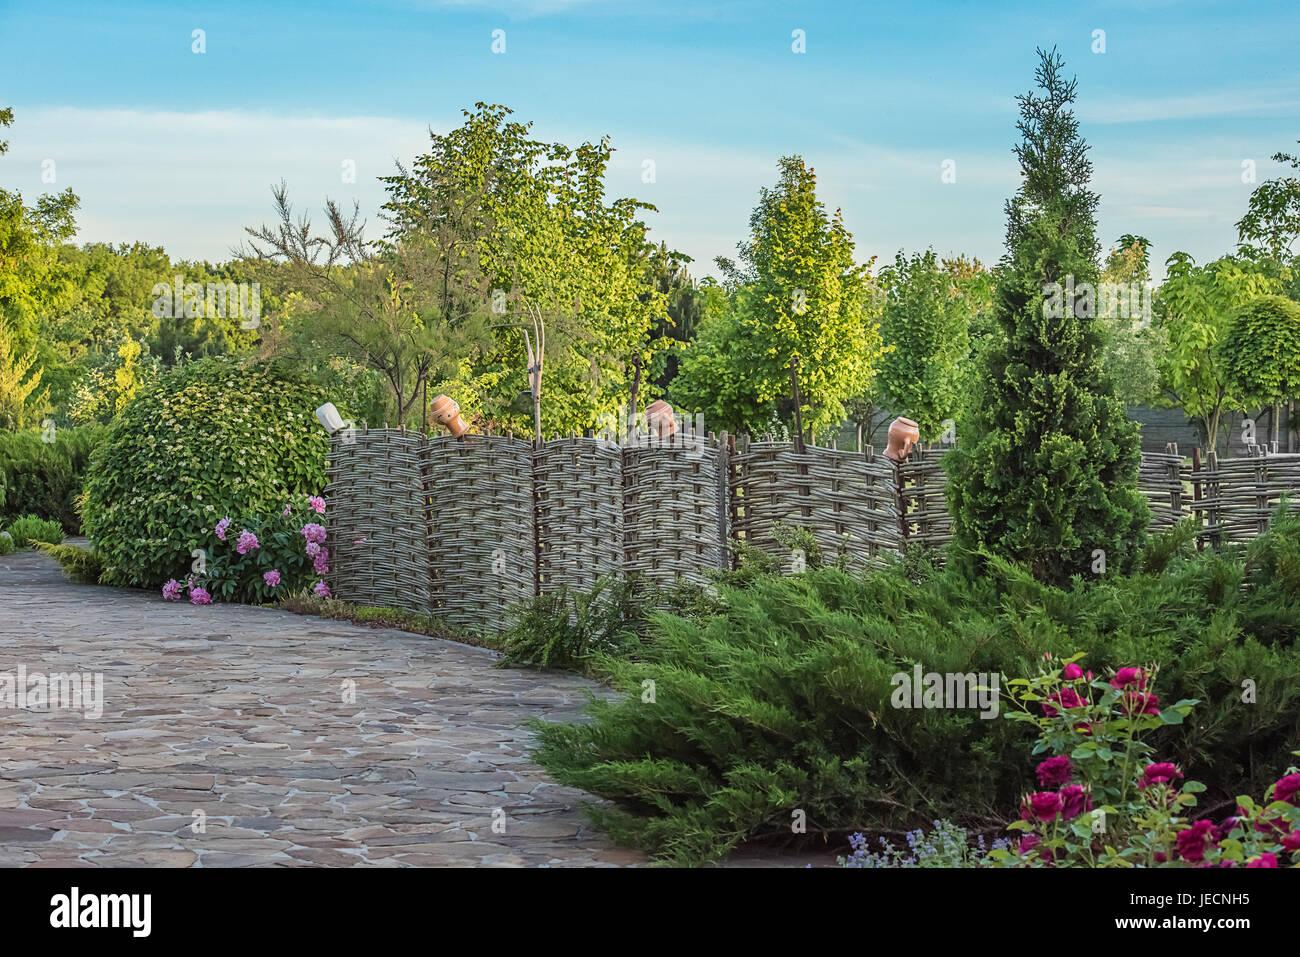 Stile vecchio recinto listellare con brocche. Circondato da verdi alberi, ginepri, peonia e rose. Foto Stock